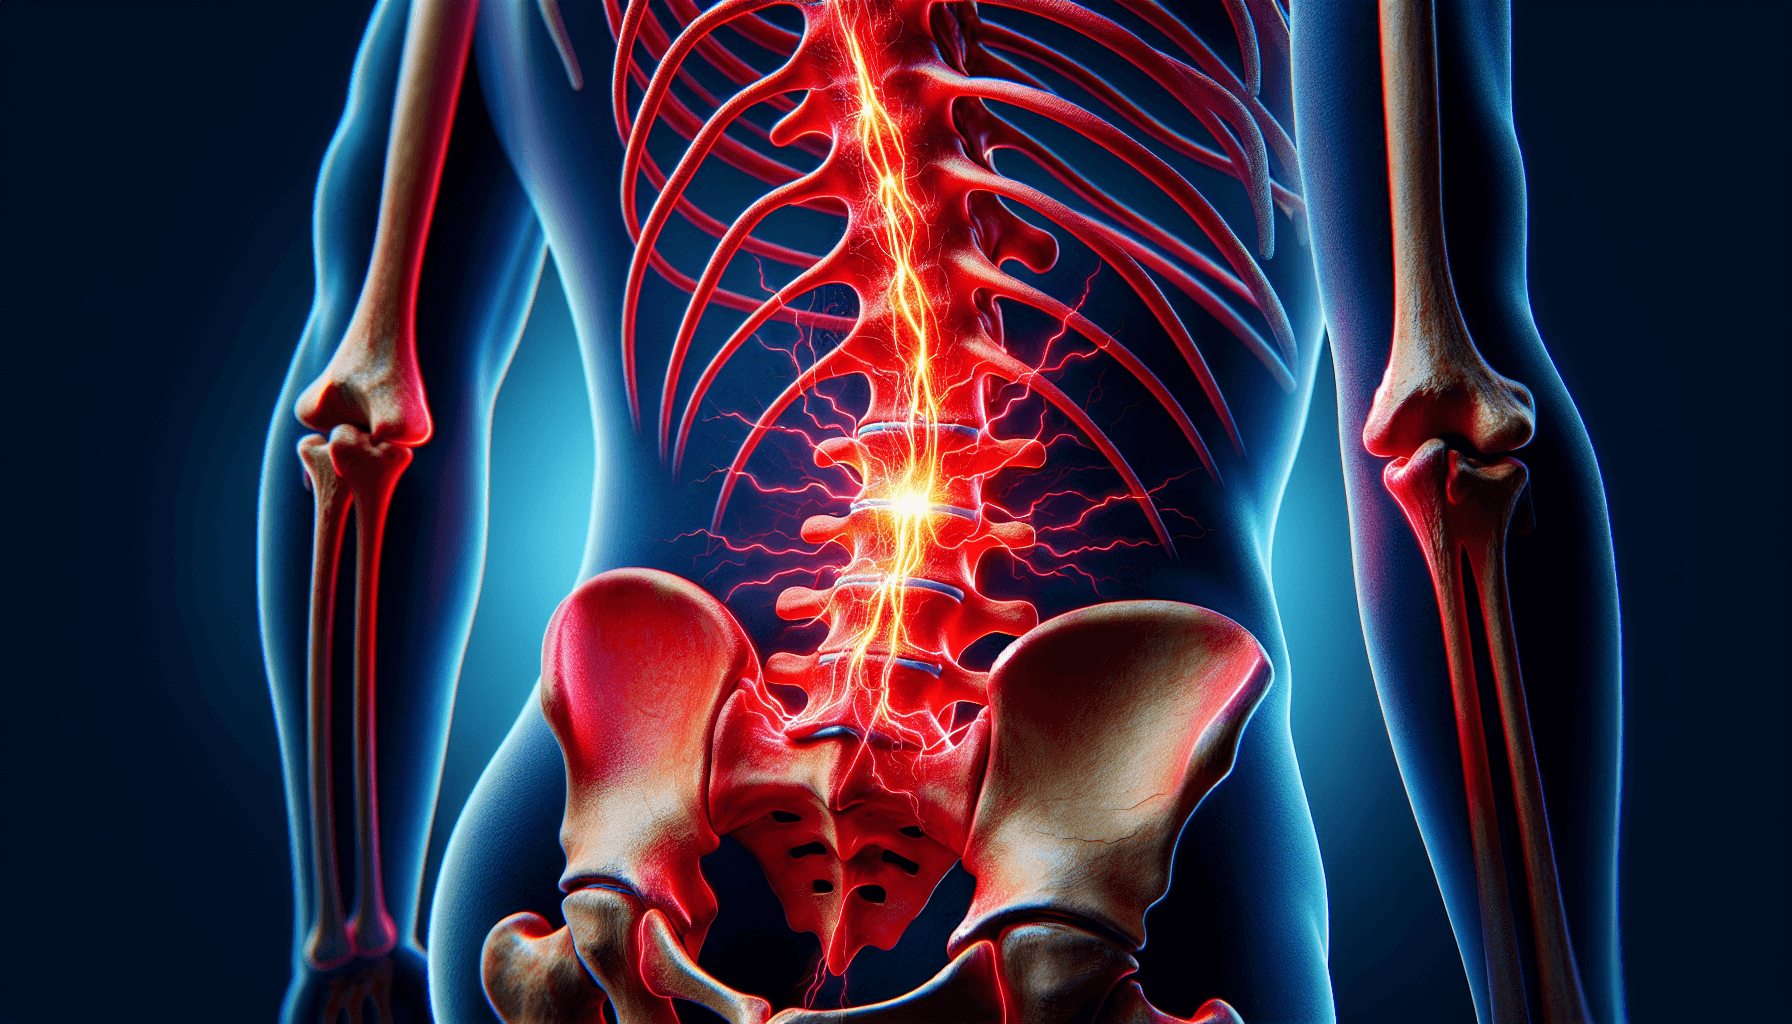 Basivertebral nerve in chronic low back pain